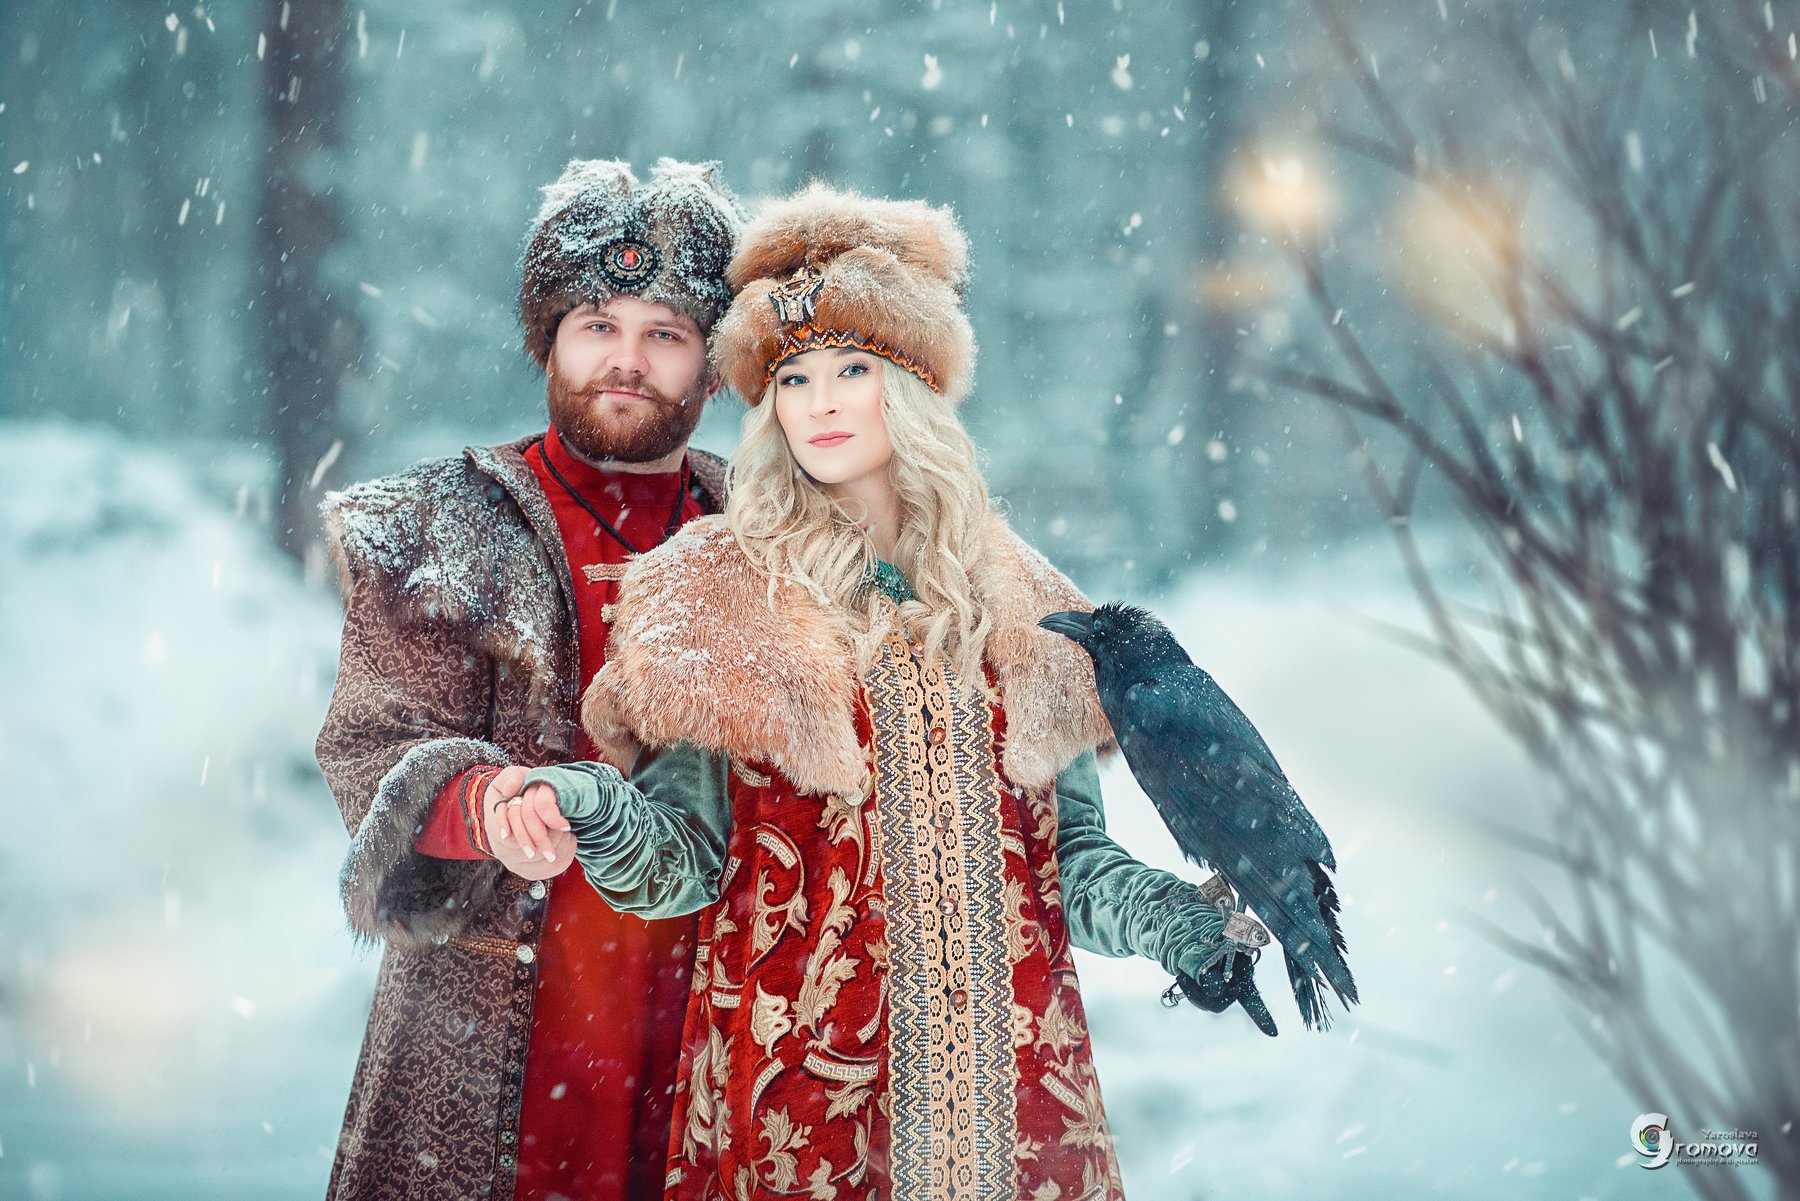 портрет, семья, зима, ворон, князь, княжна, дворяне, снег, сказка, Ярослава Громова